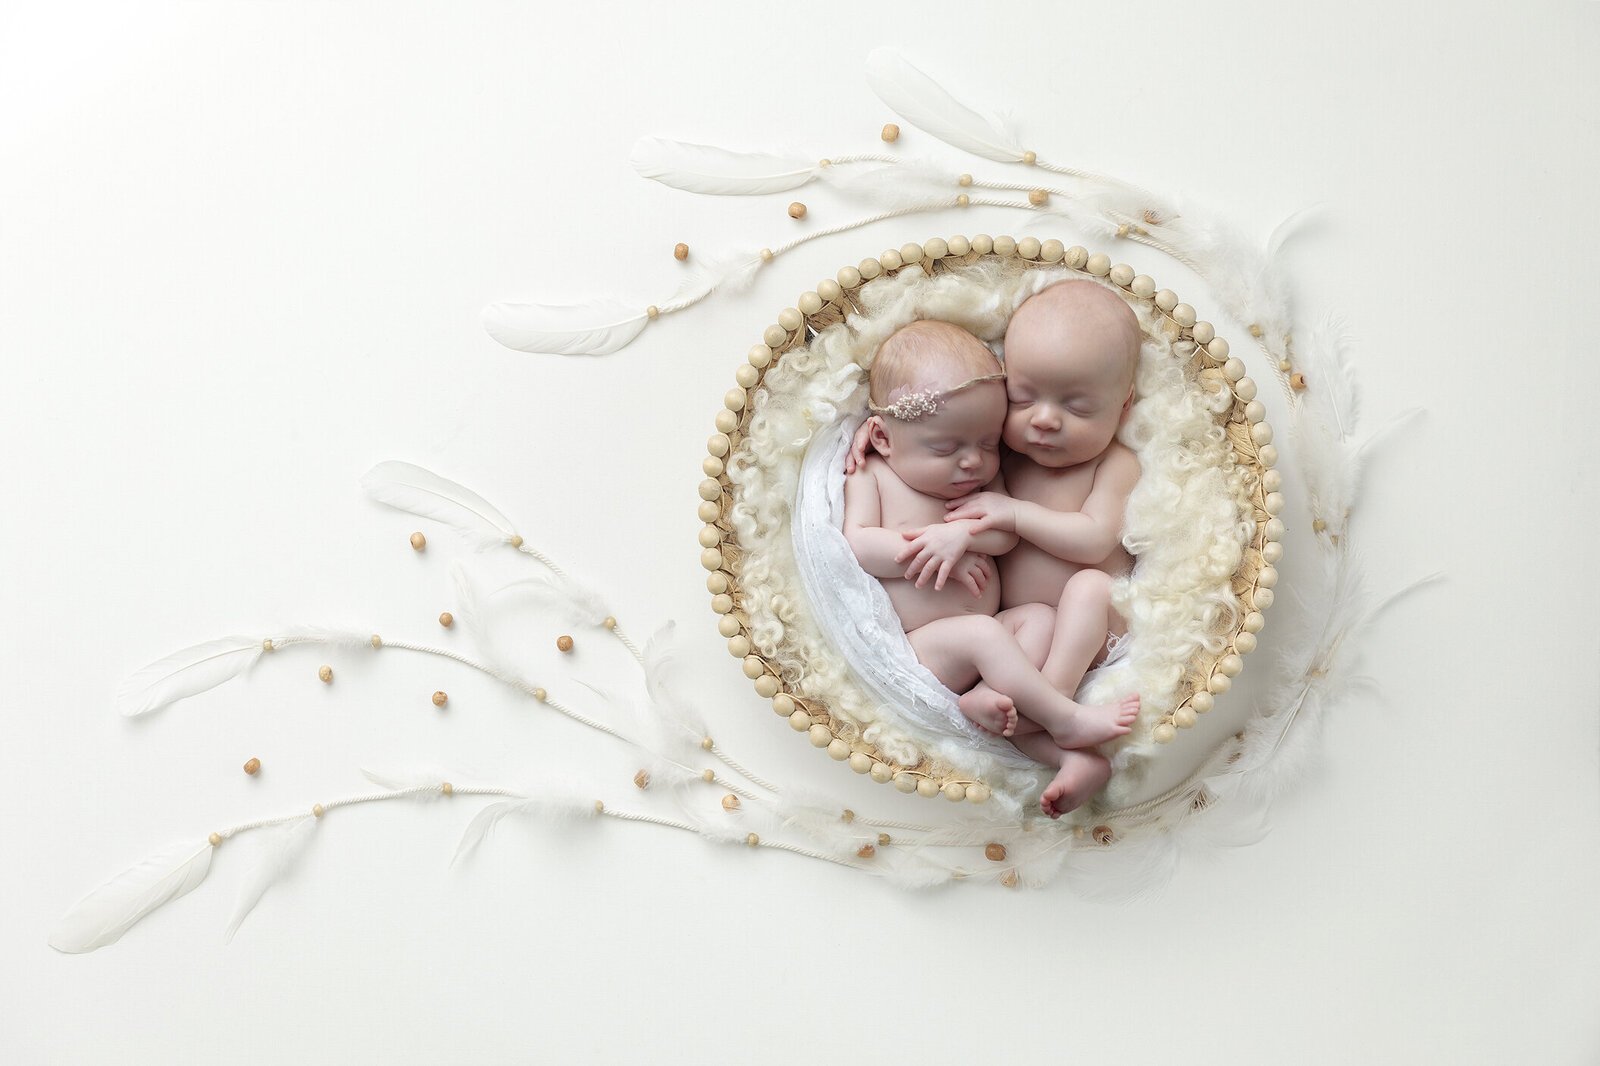 Newborn twins in basket